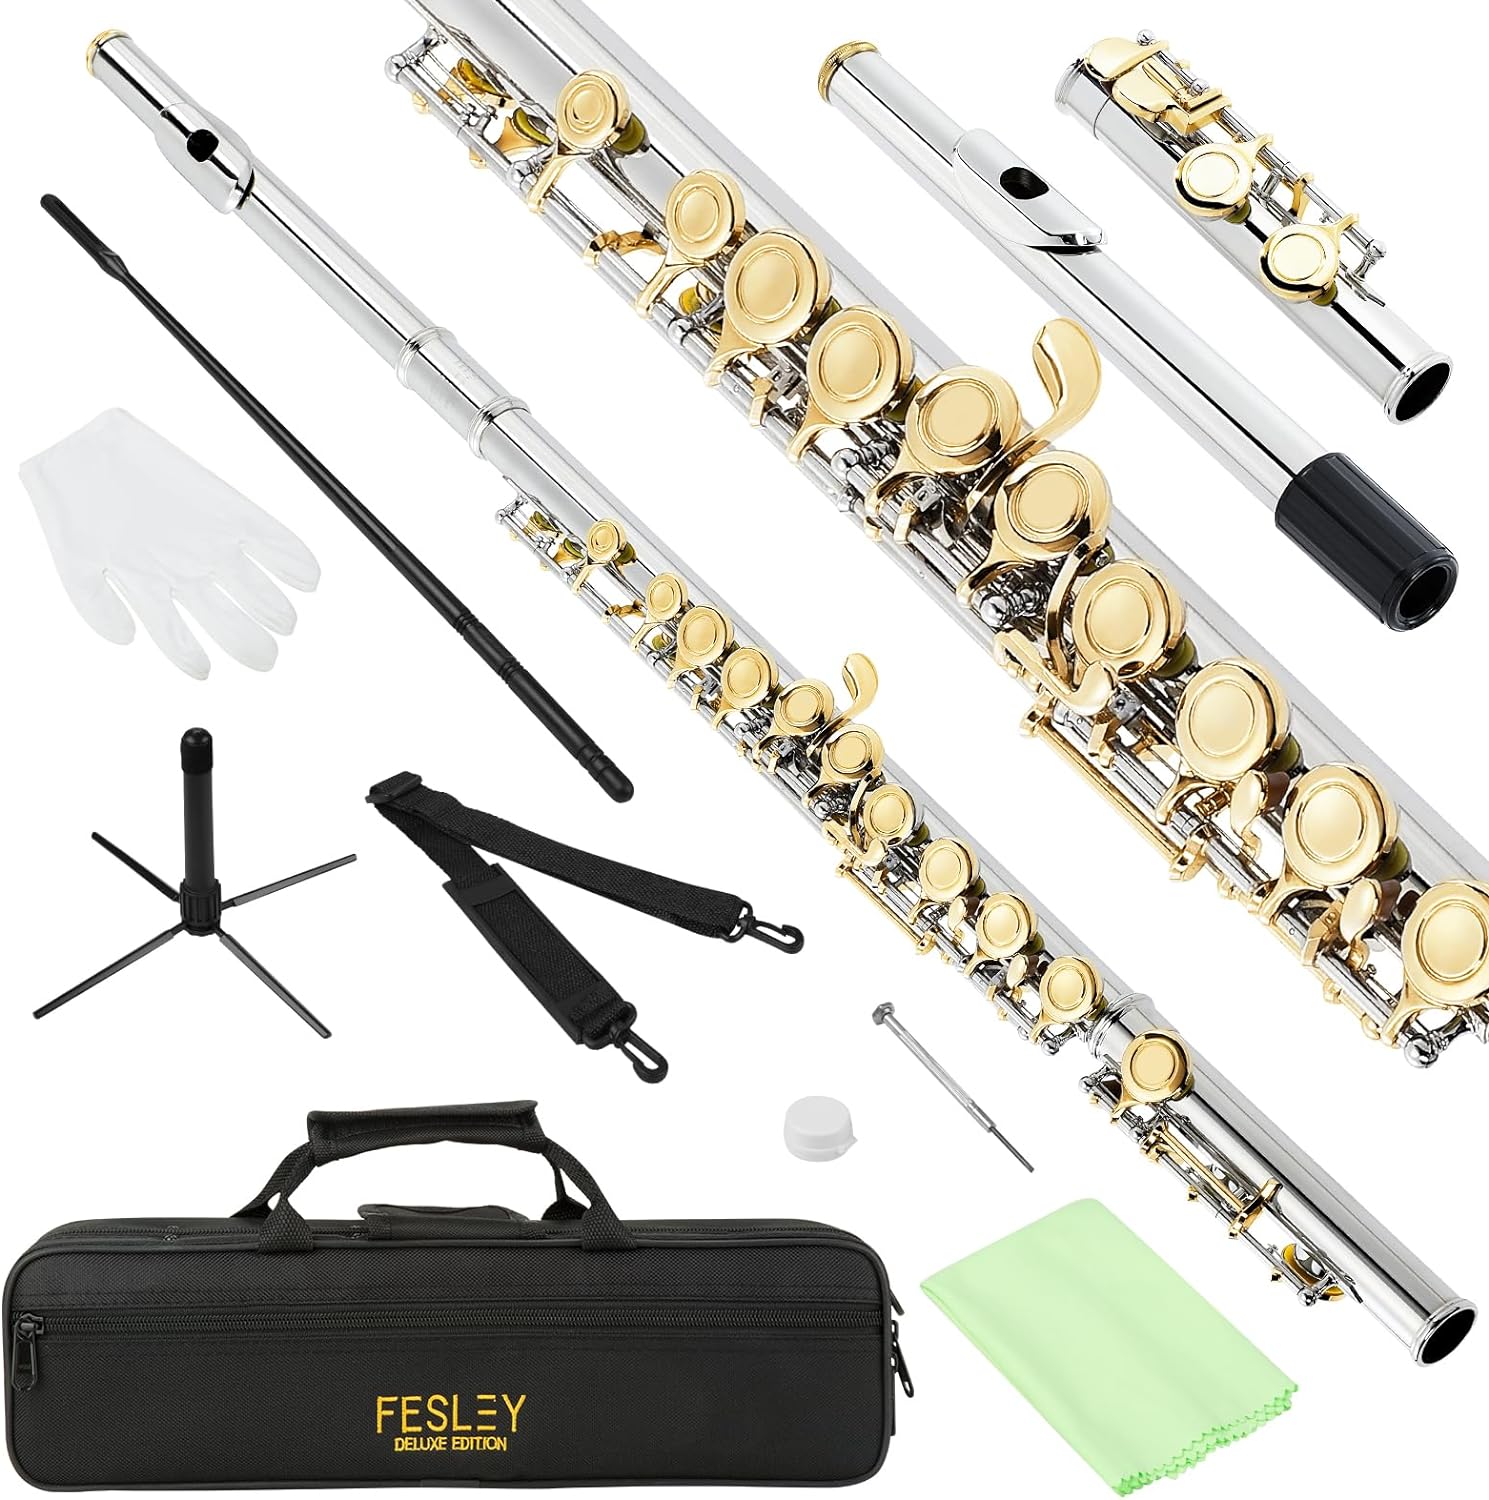 Fesley 16 Keys C Flute Instrument-Nickel